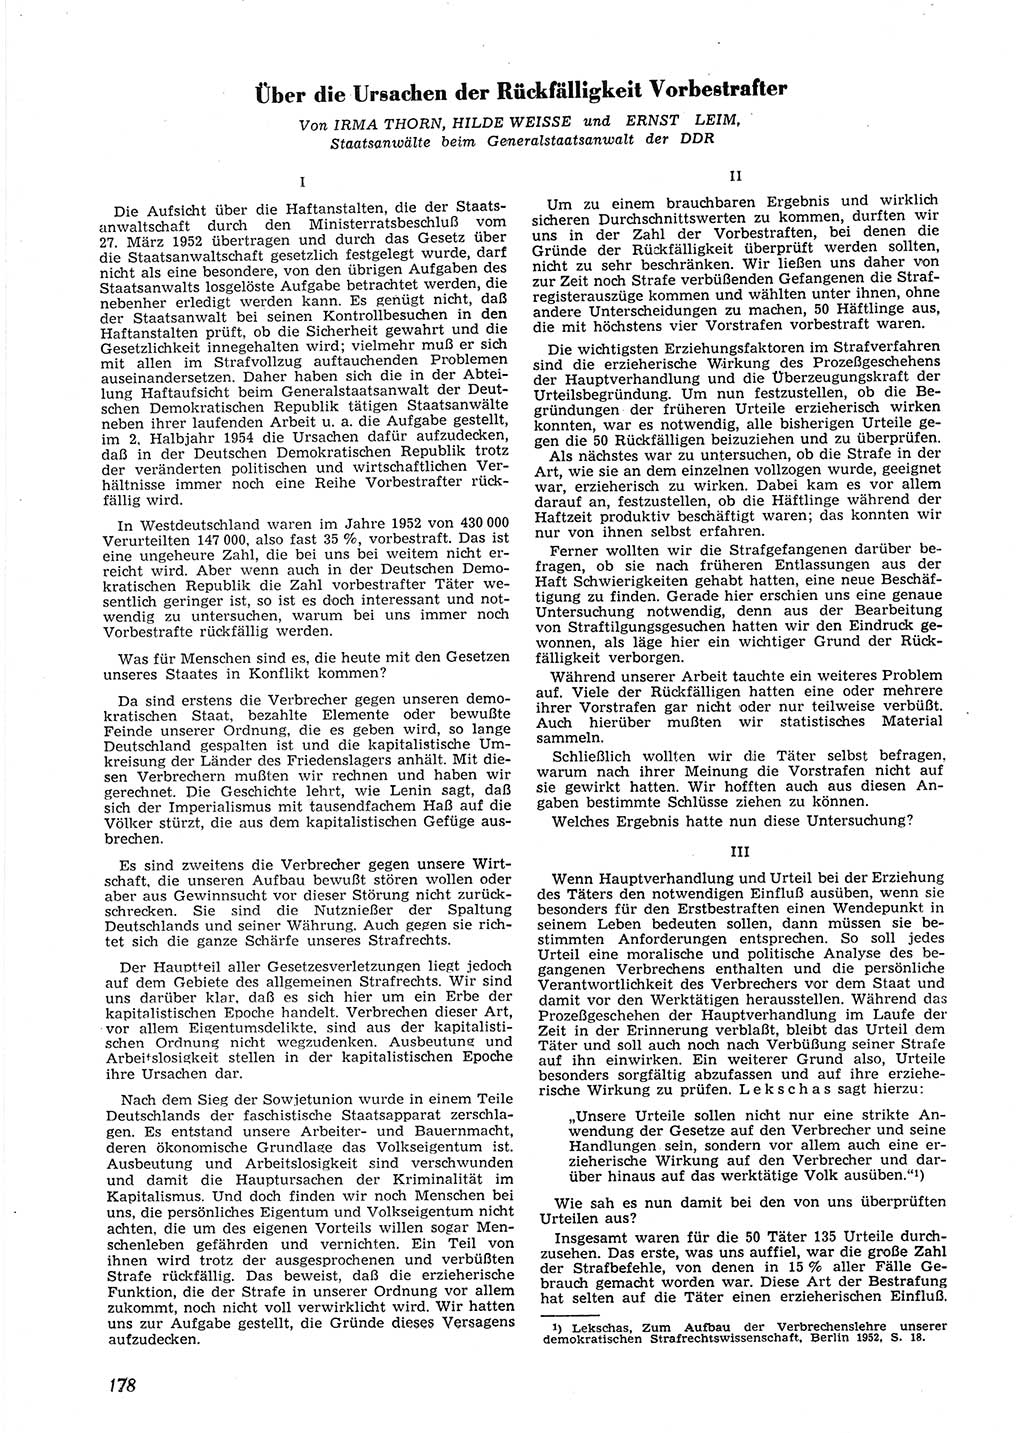 Neue Justiz (NJ), Zeitschrift für Recht und Rechtswissenschaft [Deutsche Demokratische Republik (DDR)], 9. Jahrgang 1955, Seite 178 (NJ DDR 1955, S. 178)